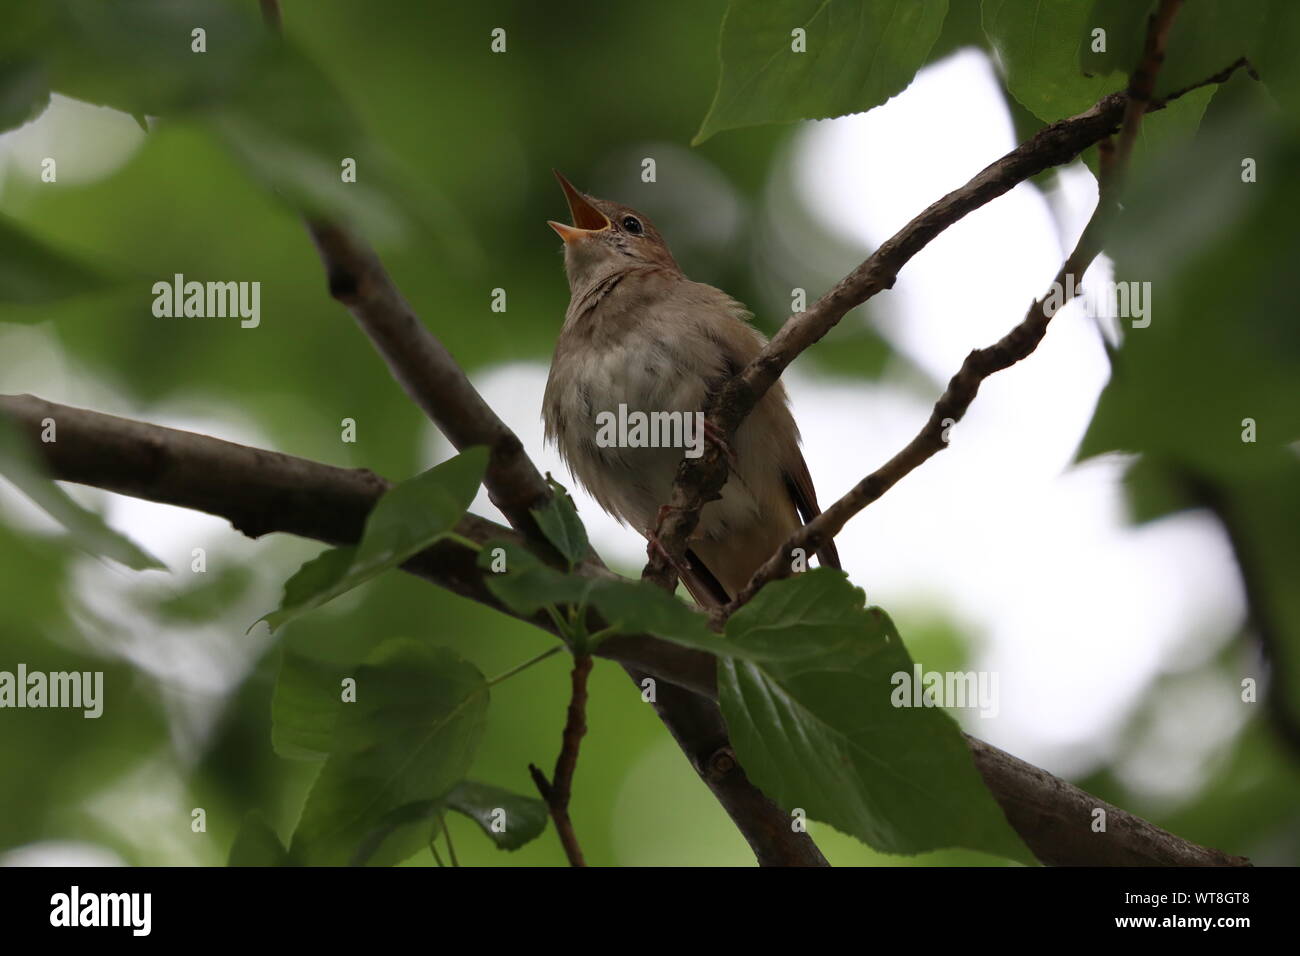 Singende Nachtigall am Abend im Baum * rossignol chantant dans l'arbre à l'aube | Nahaufnahme - close up Banque D'Images